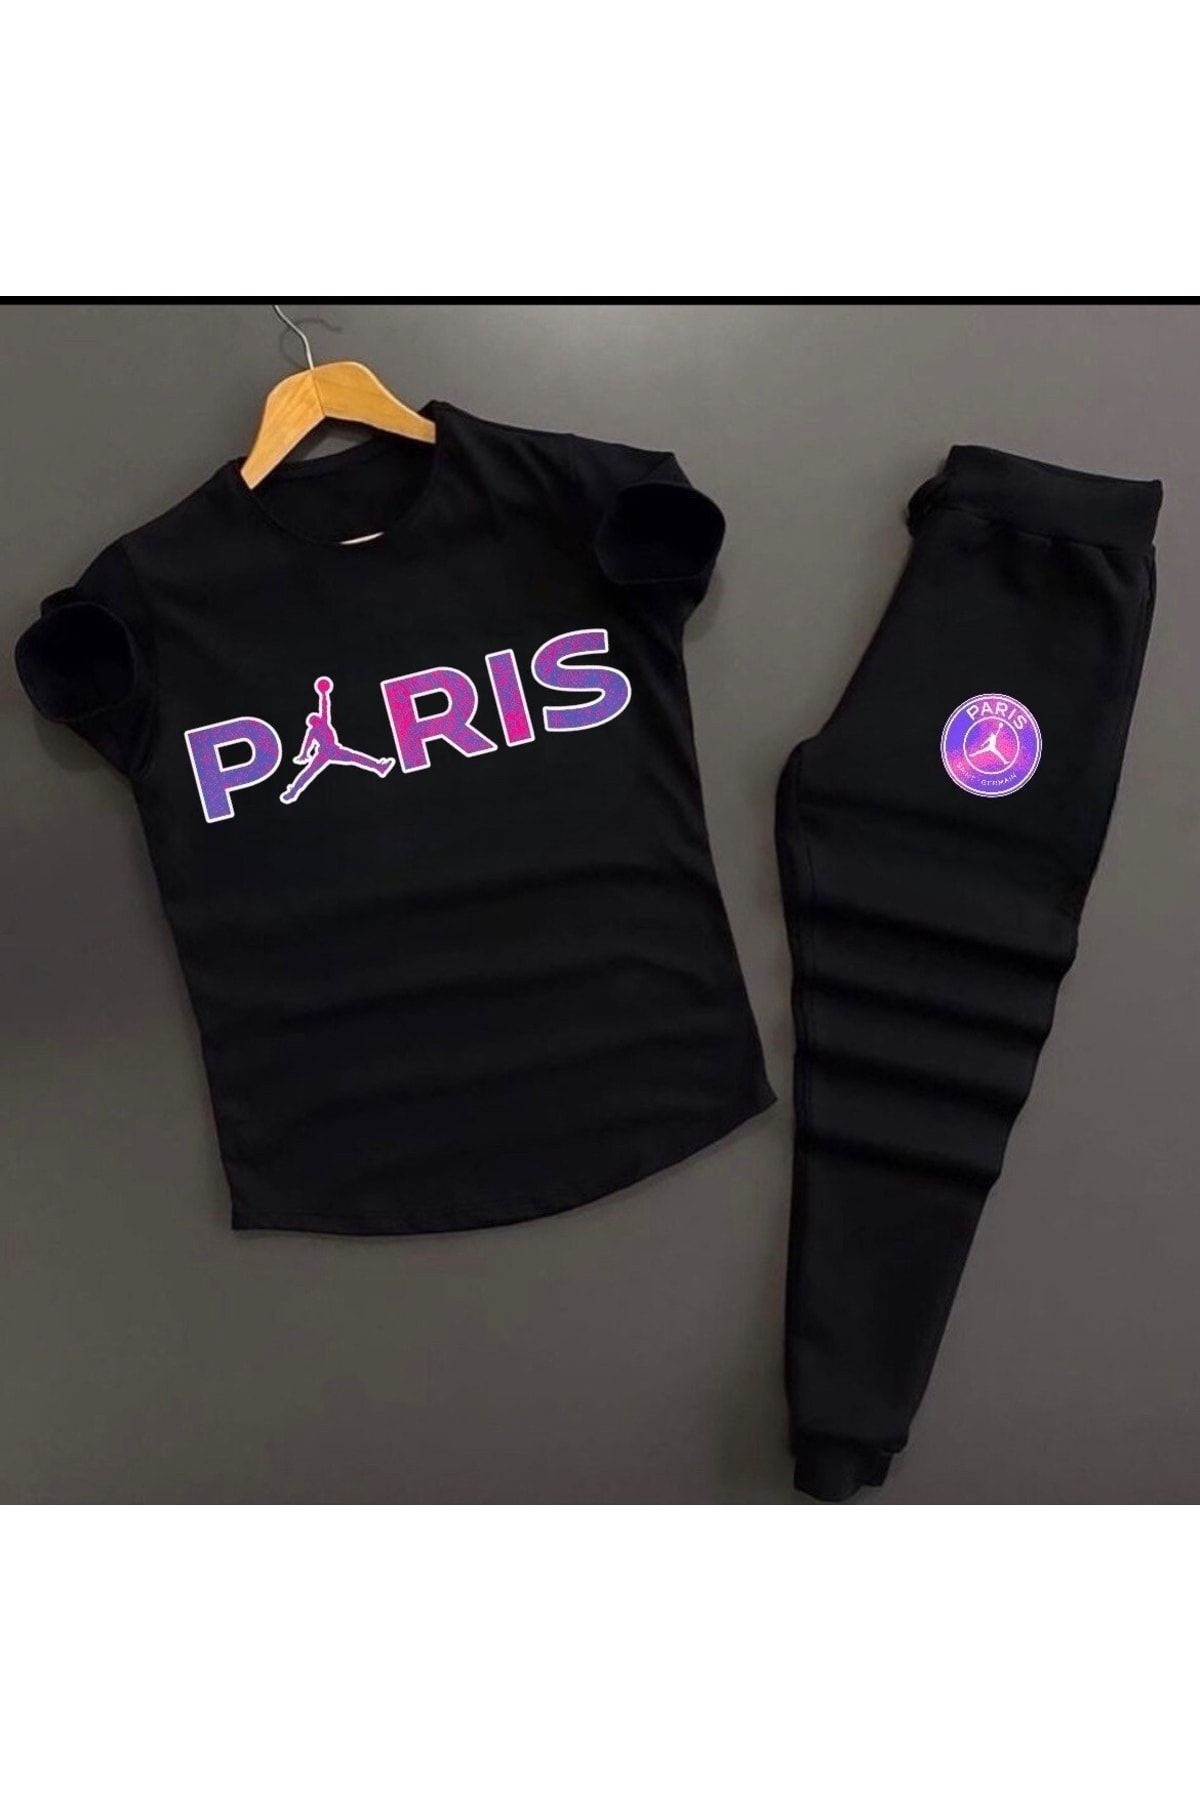 NewCabin Unisex Siyah Paris Baskılı Slim Fit Tişört- Siyah Dar Kesim Eşofman Altı Kombin Alt Üst Takım 2'li